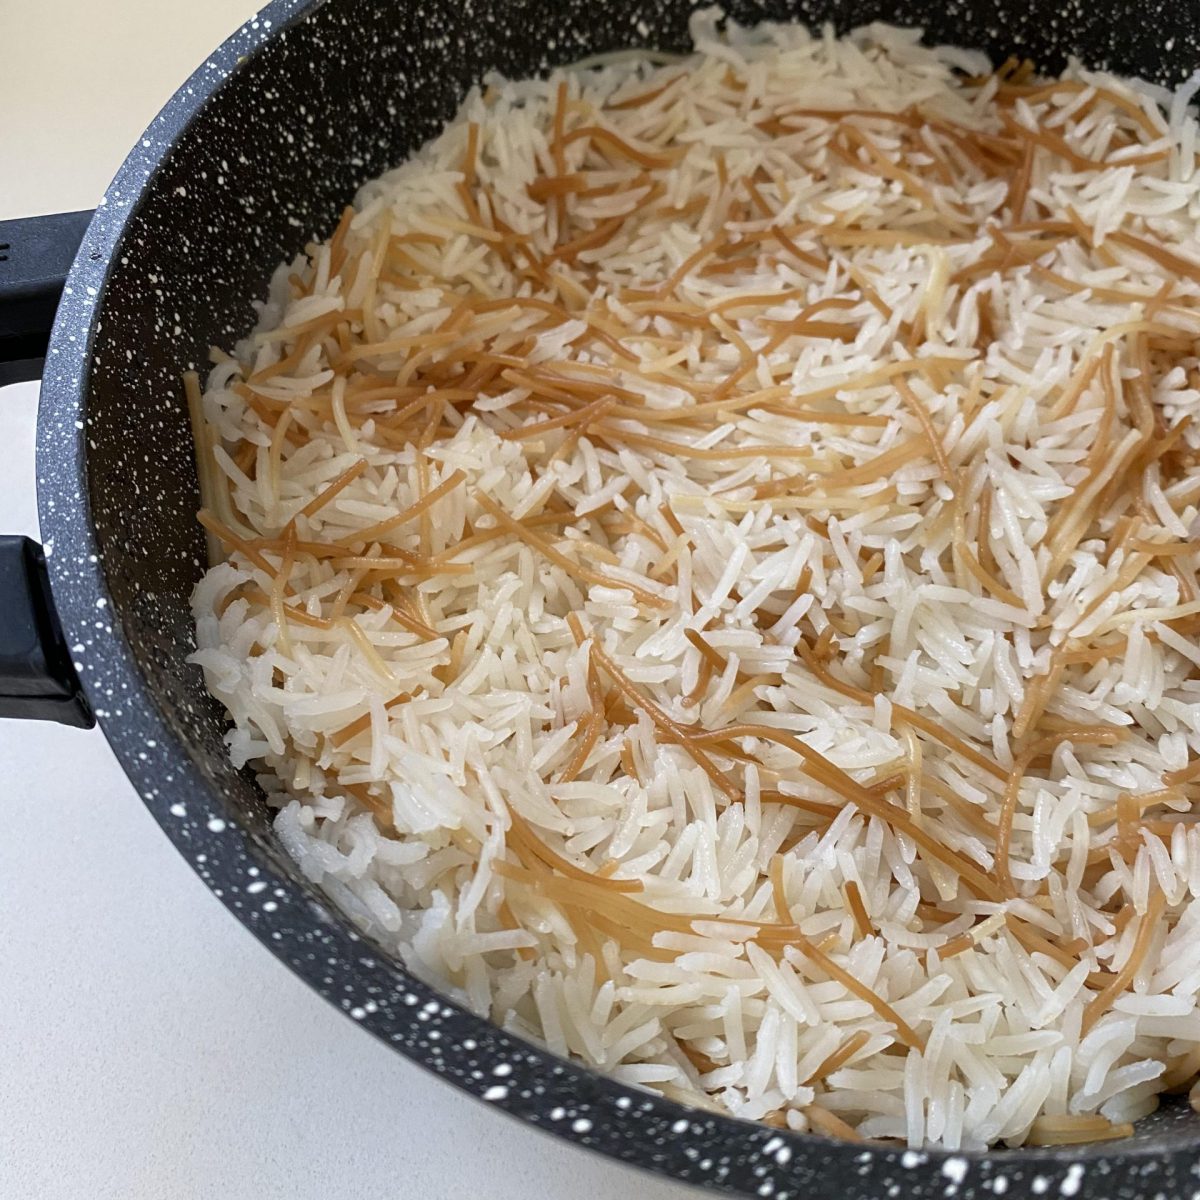 אורז עם איטריות